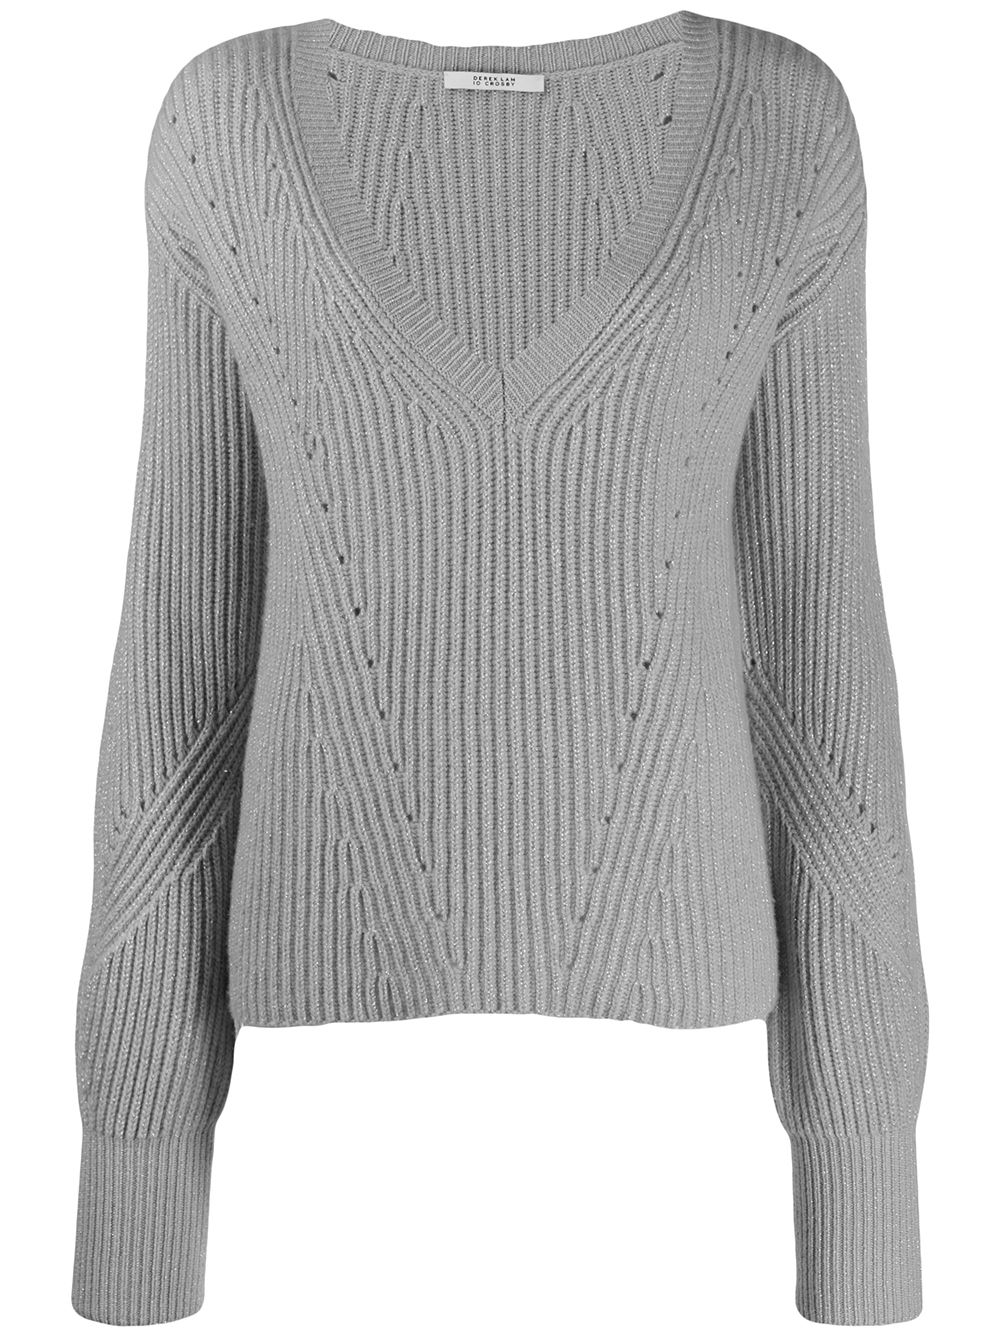 фото Derek lam 10 crosby кашемировый свитер в рубчик с v-образным вырезом и рукавами колокол